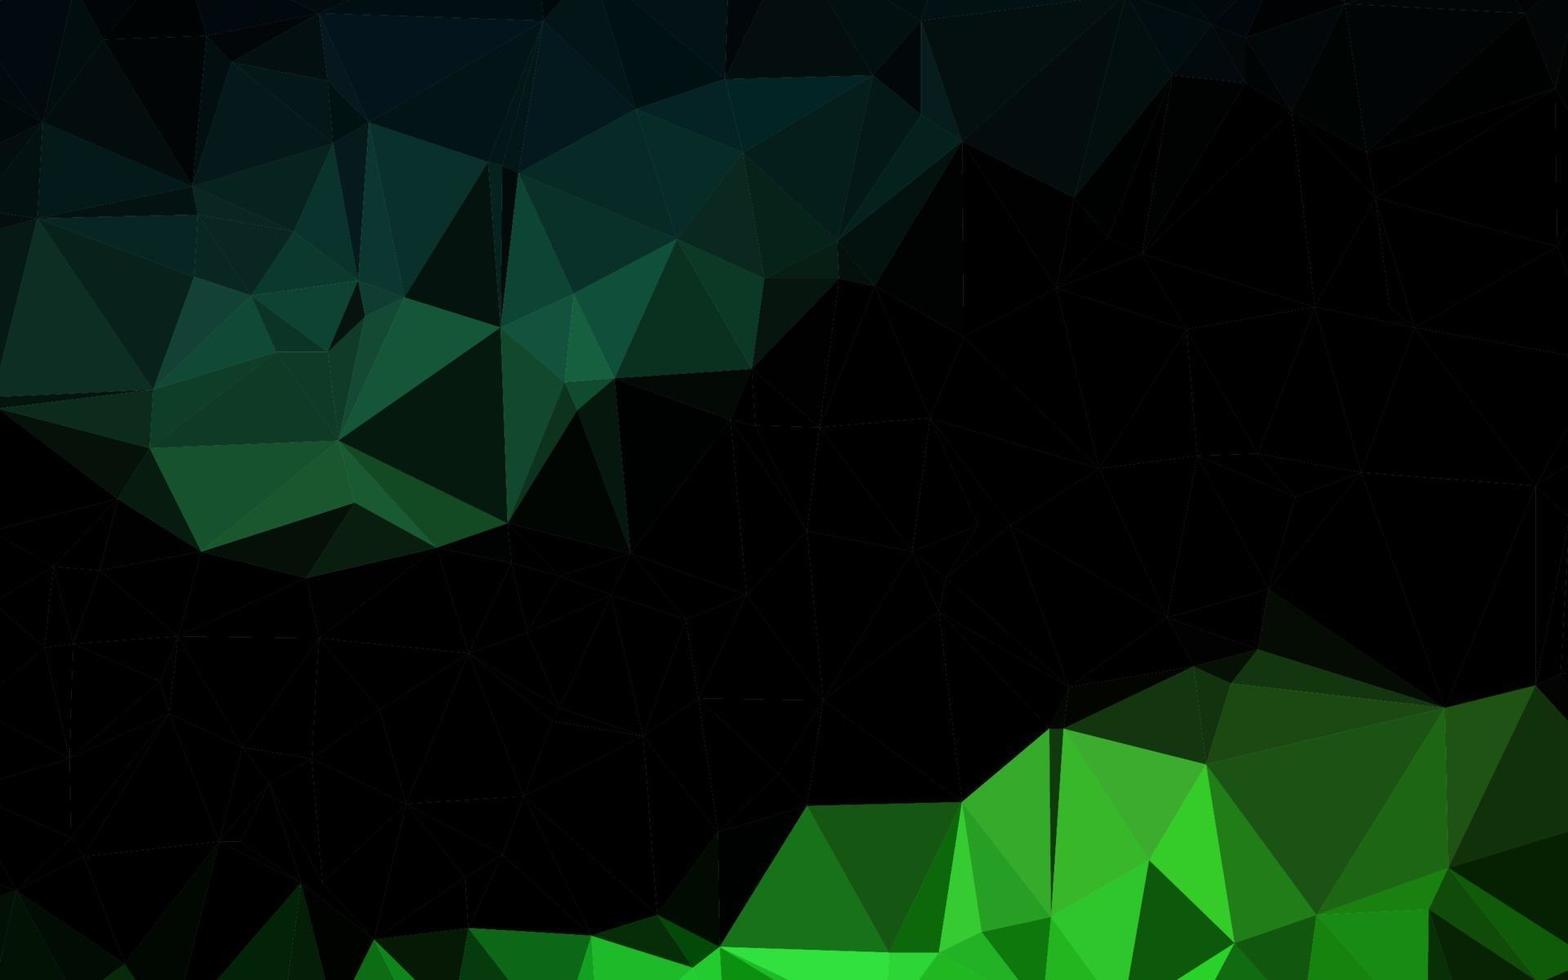 diseño poligonal abstracto vector verde oscuro.